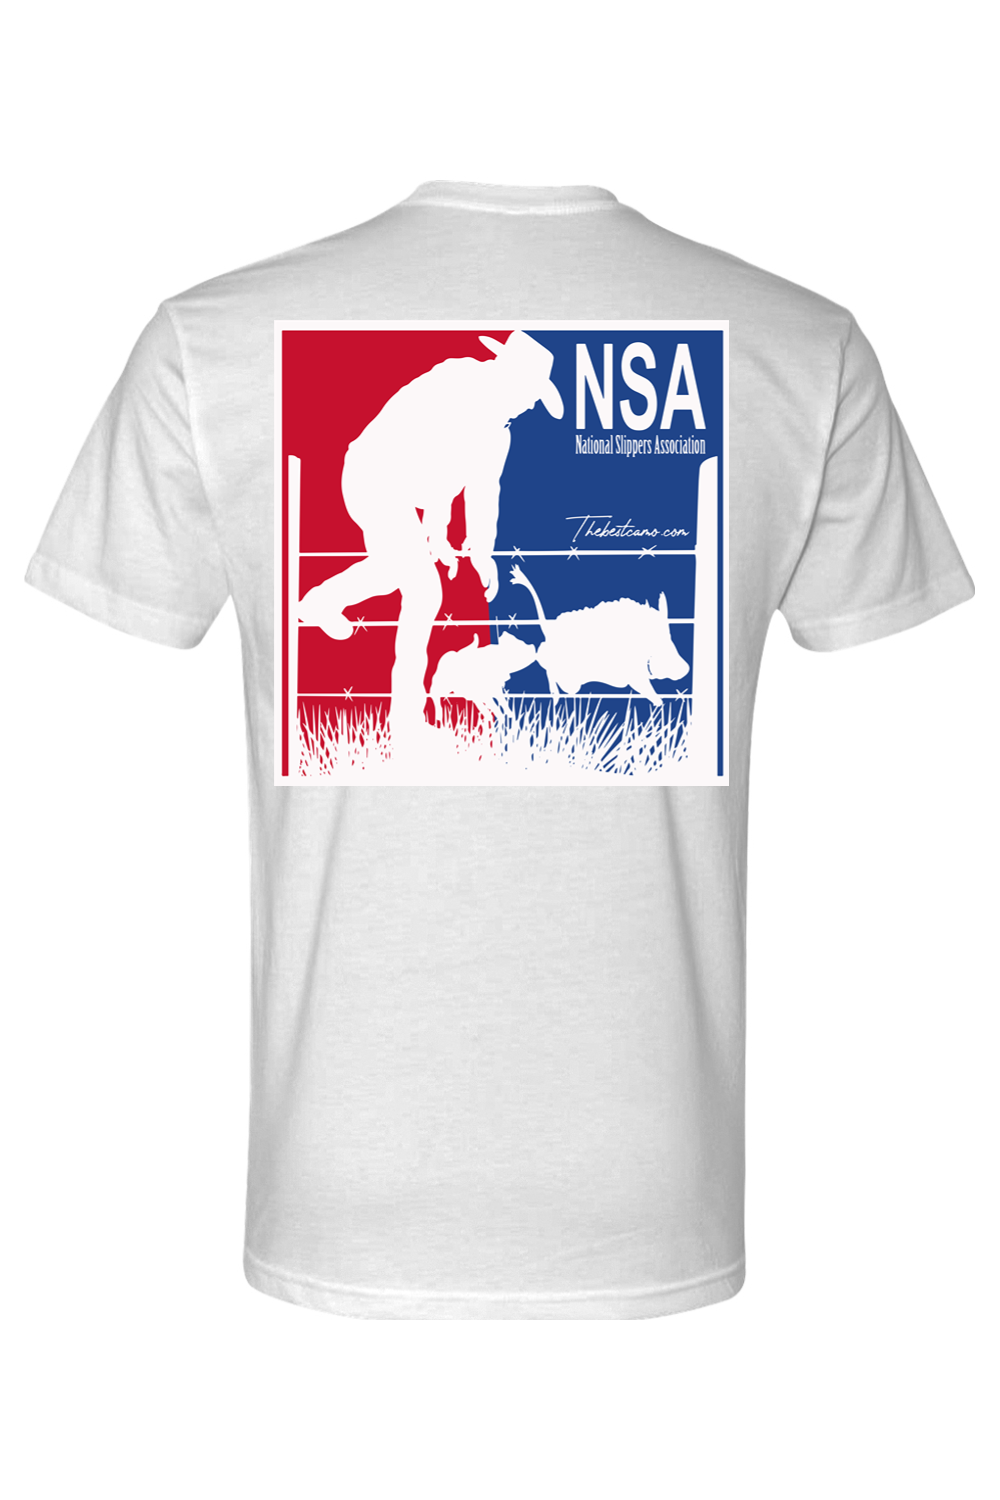 nsa white t-shirt